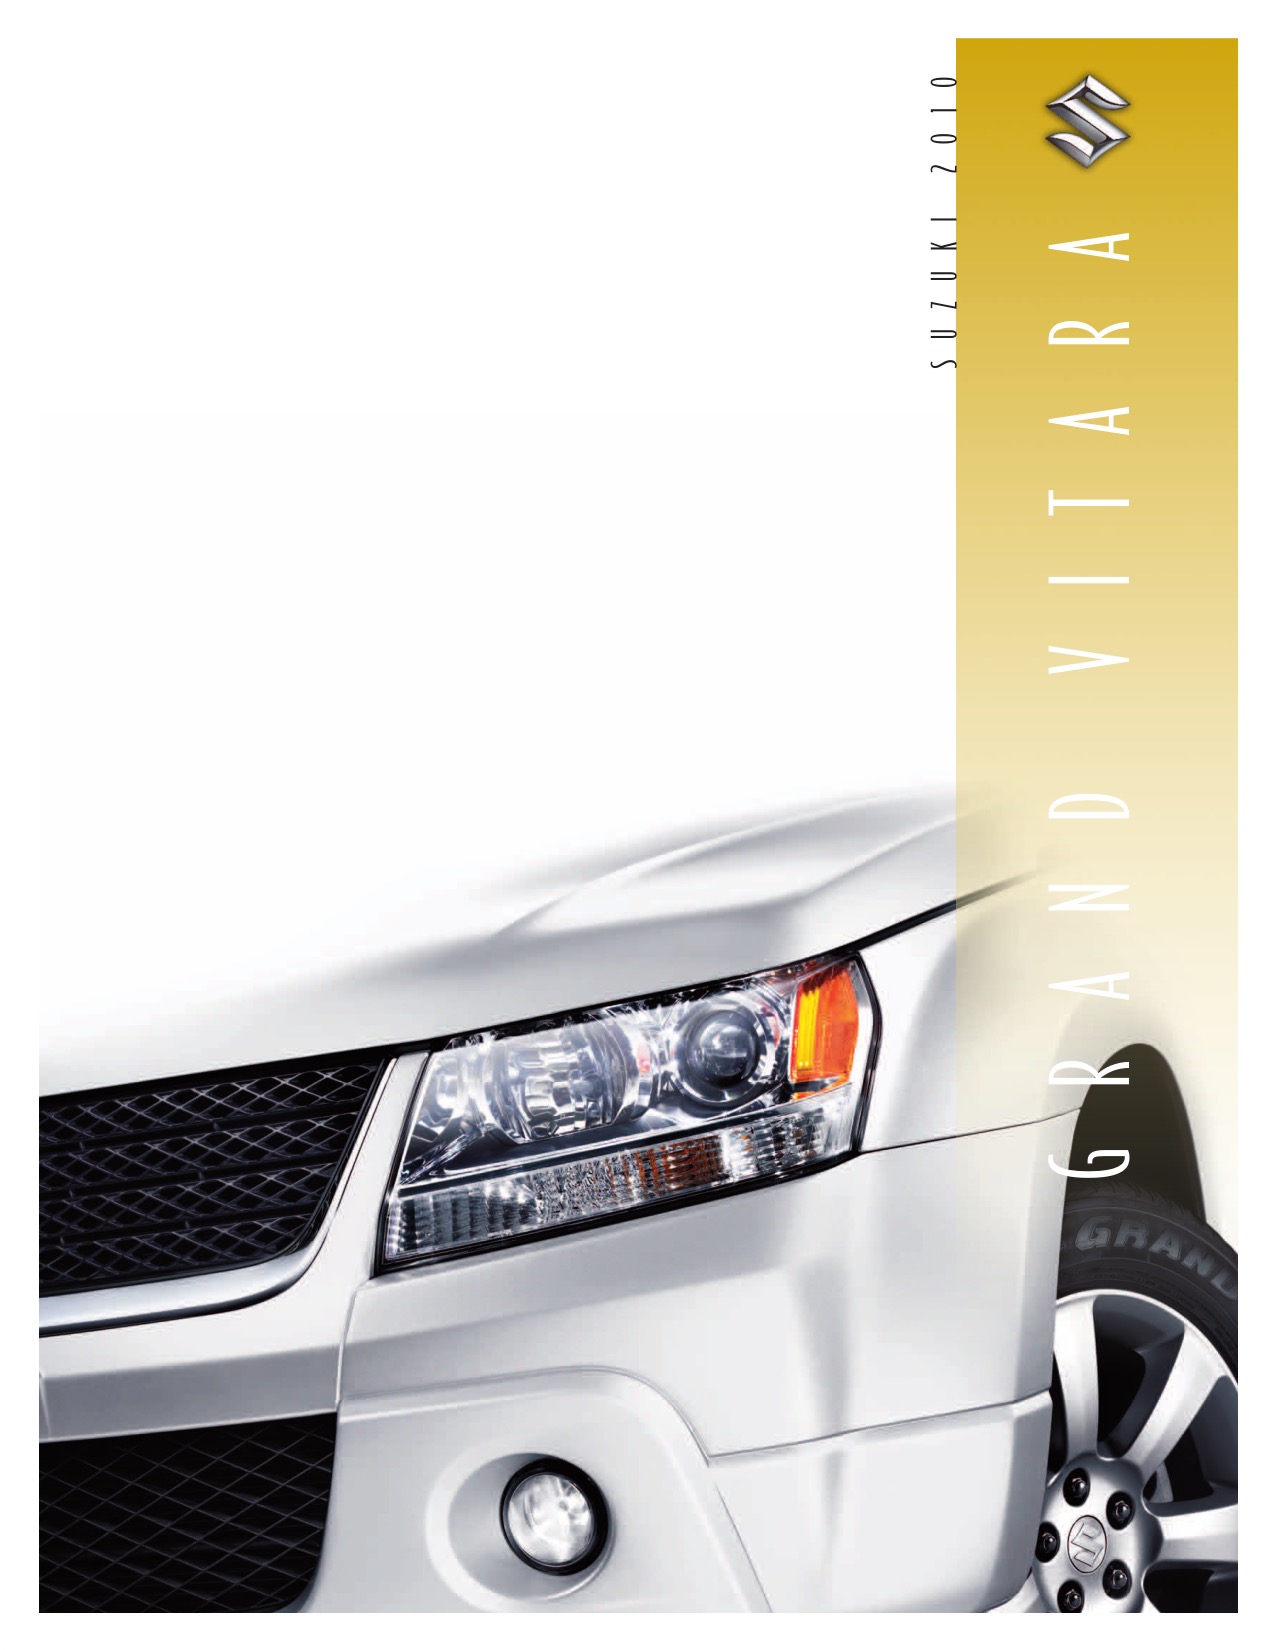 2010 Suzuki Grand Vitara Brochure Page 3